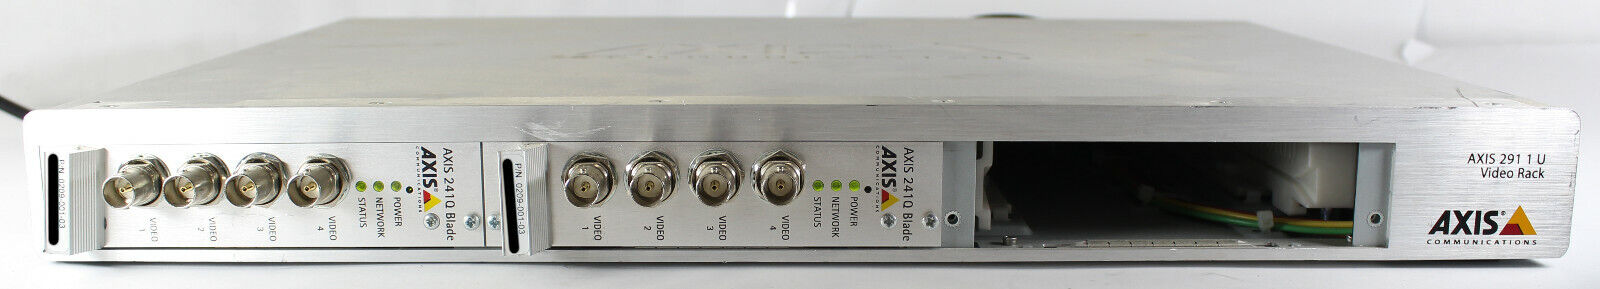  Axis 291 1U Video Serv Rack 2x 241Q Video Encoder Blade 0267-001-05 0209-001-03